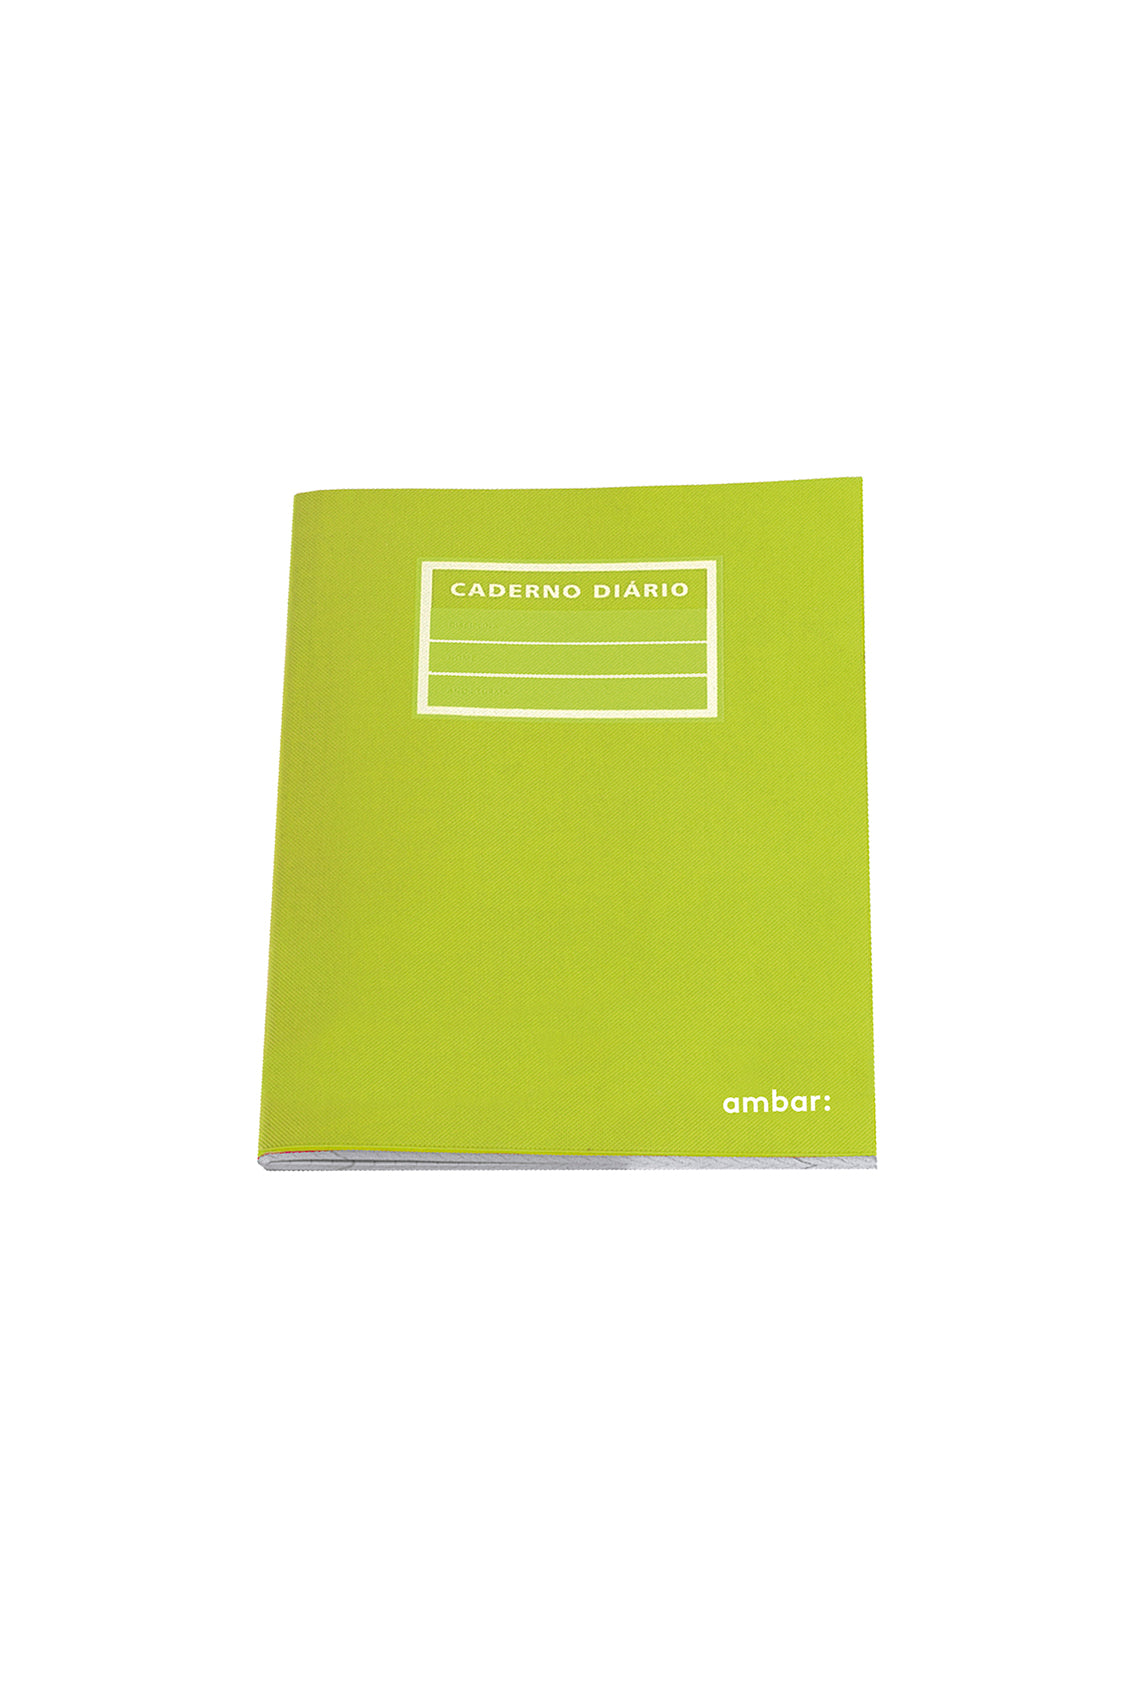 Cuaderno Grapado A5 Tapa de Plástico Ambar School Rayado 